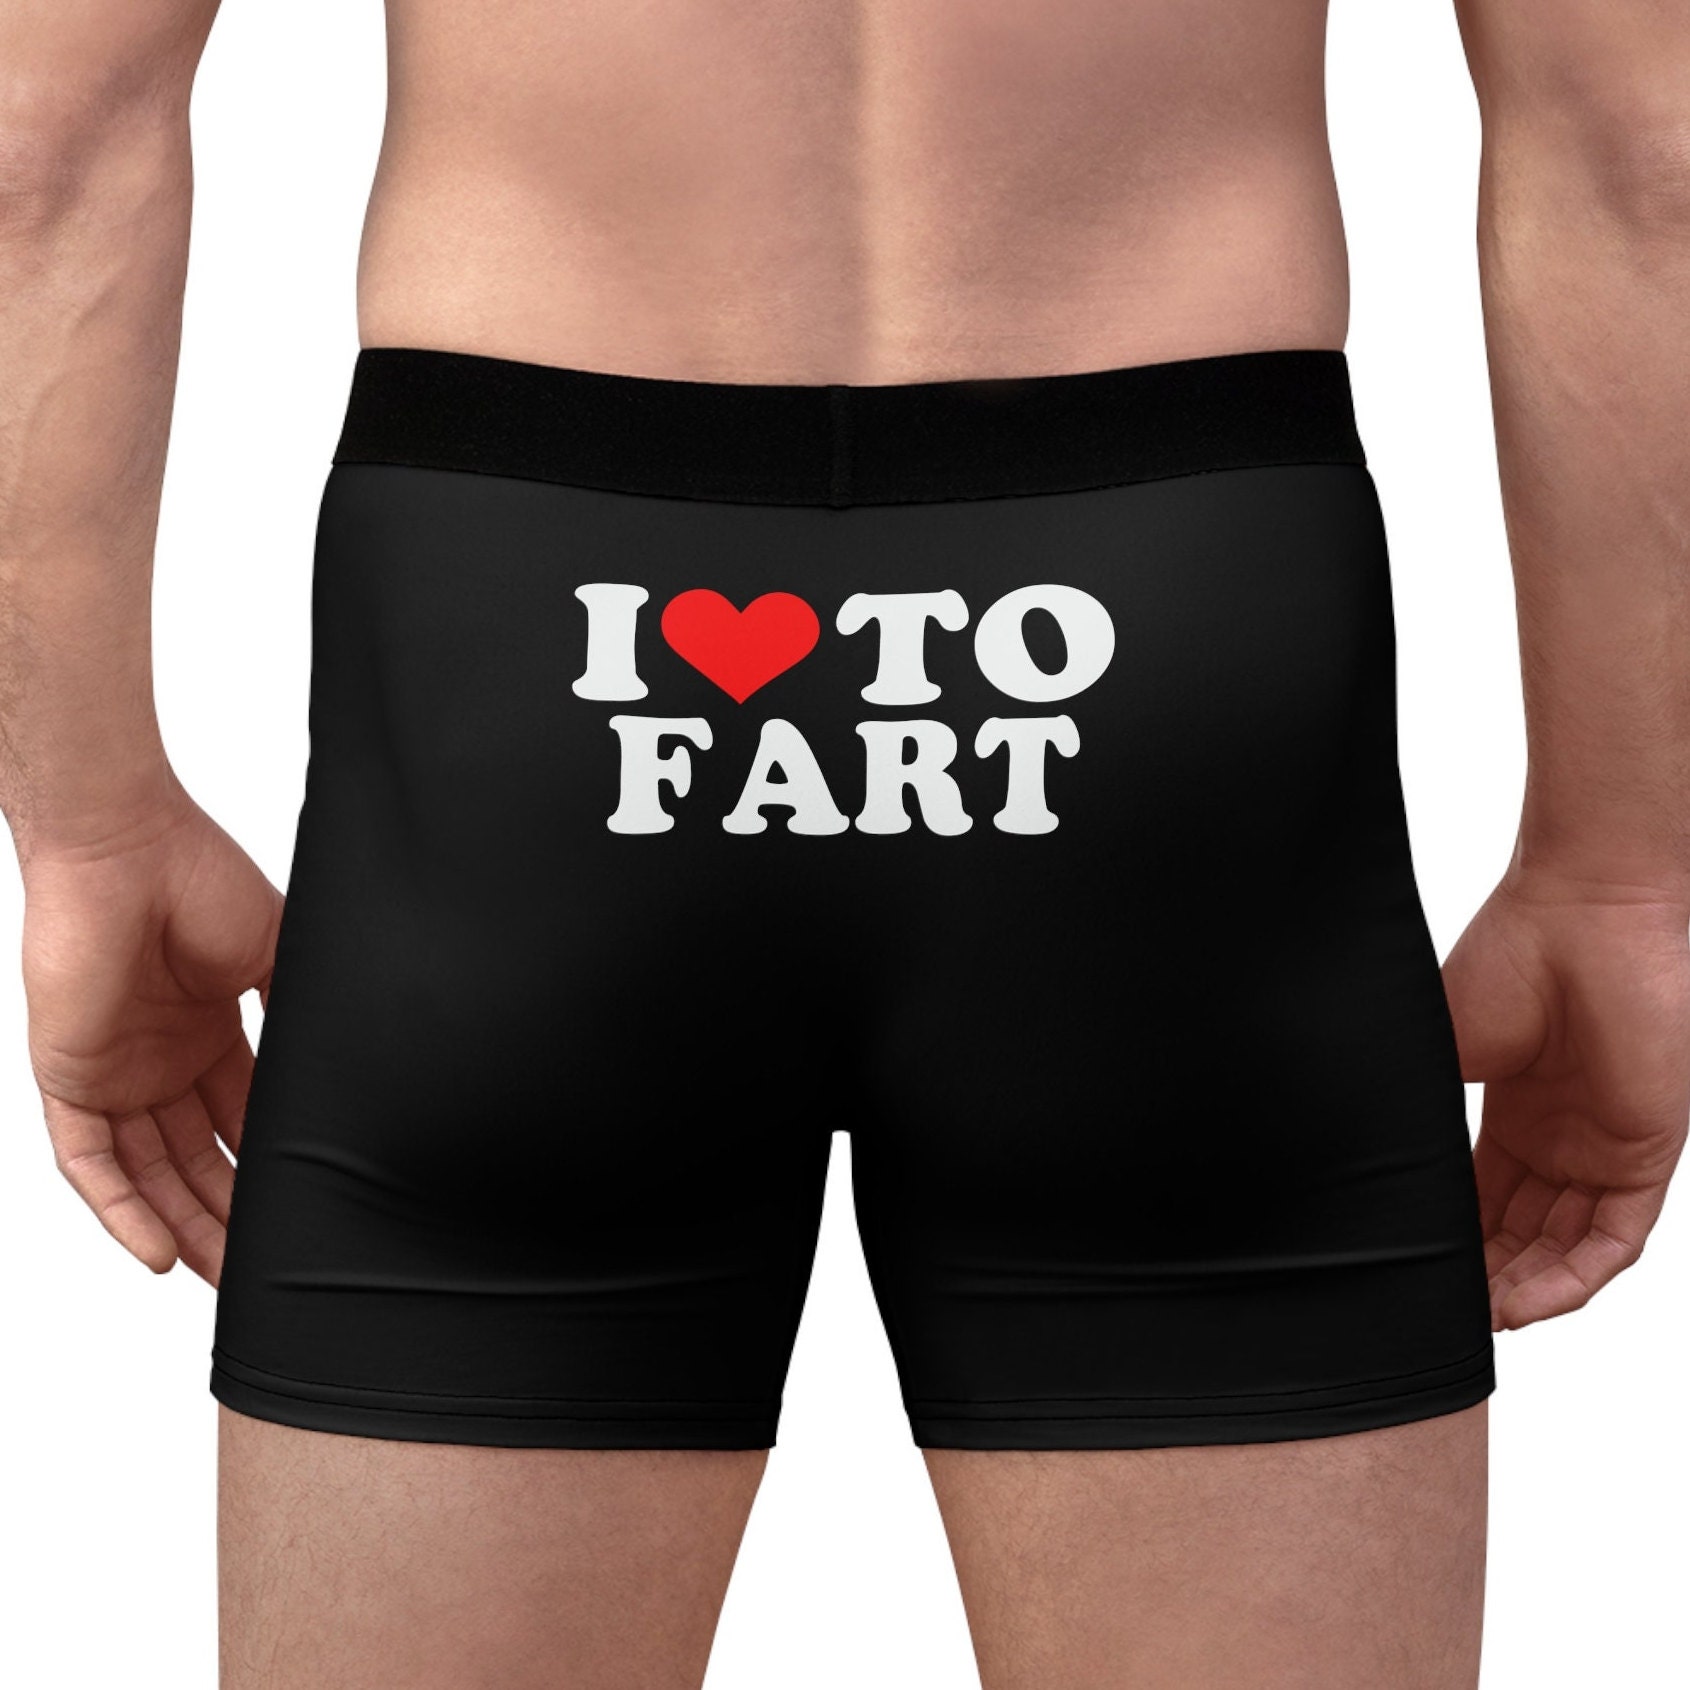 Fart Underwear 